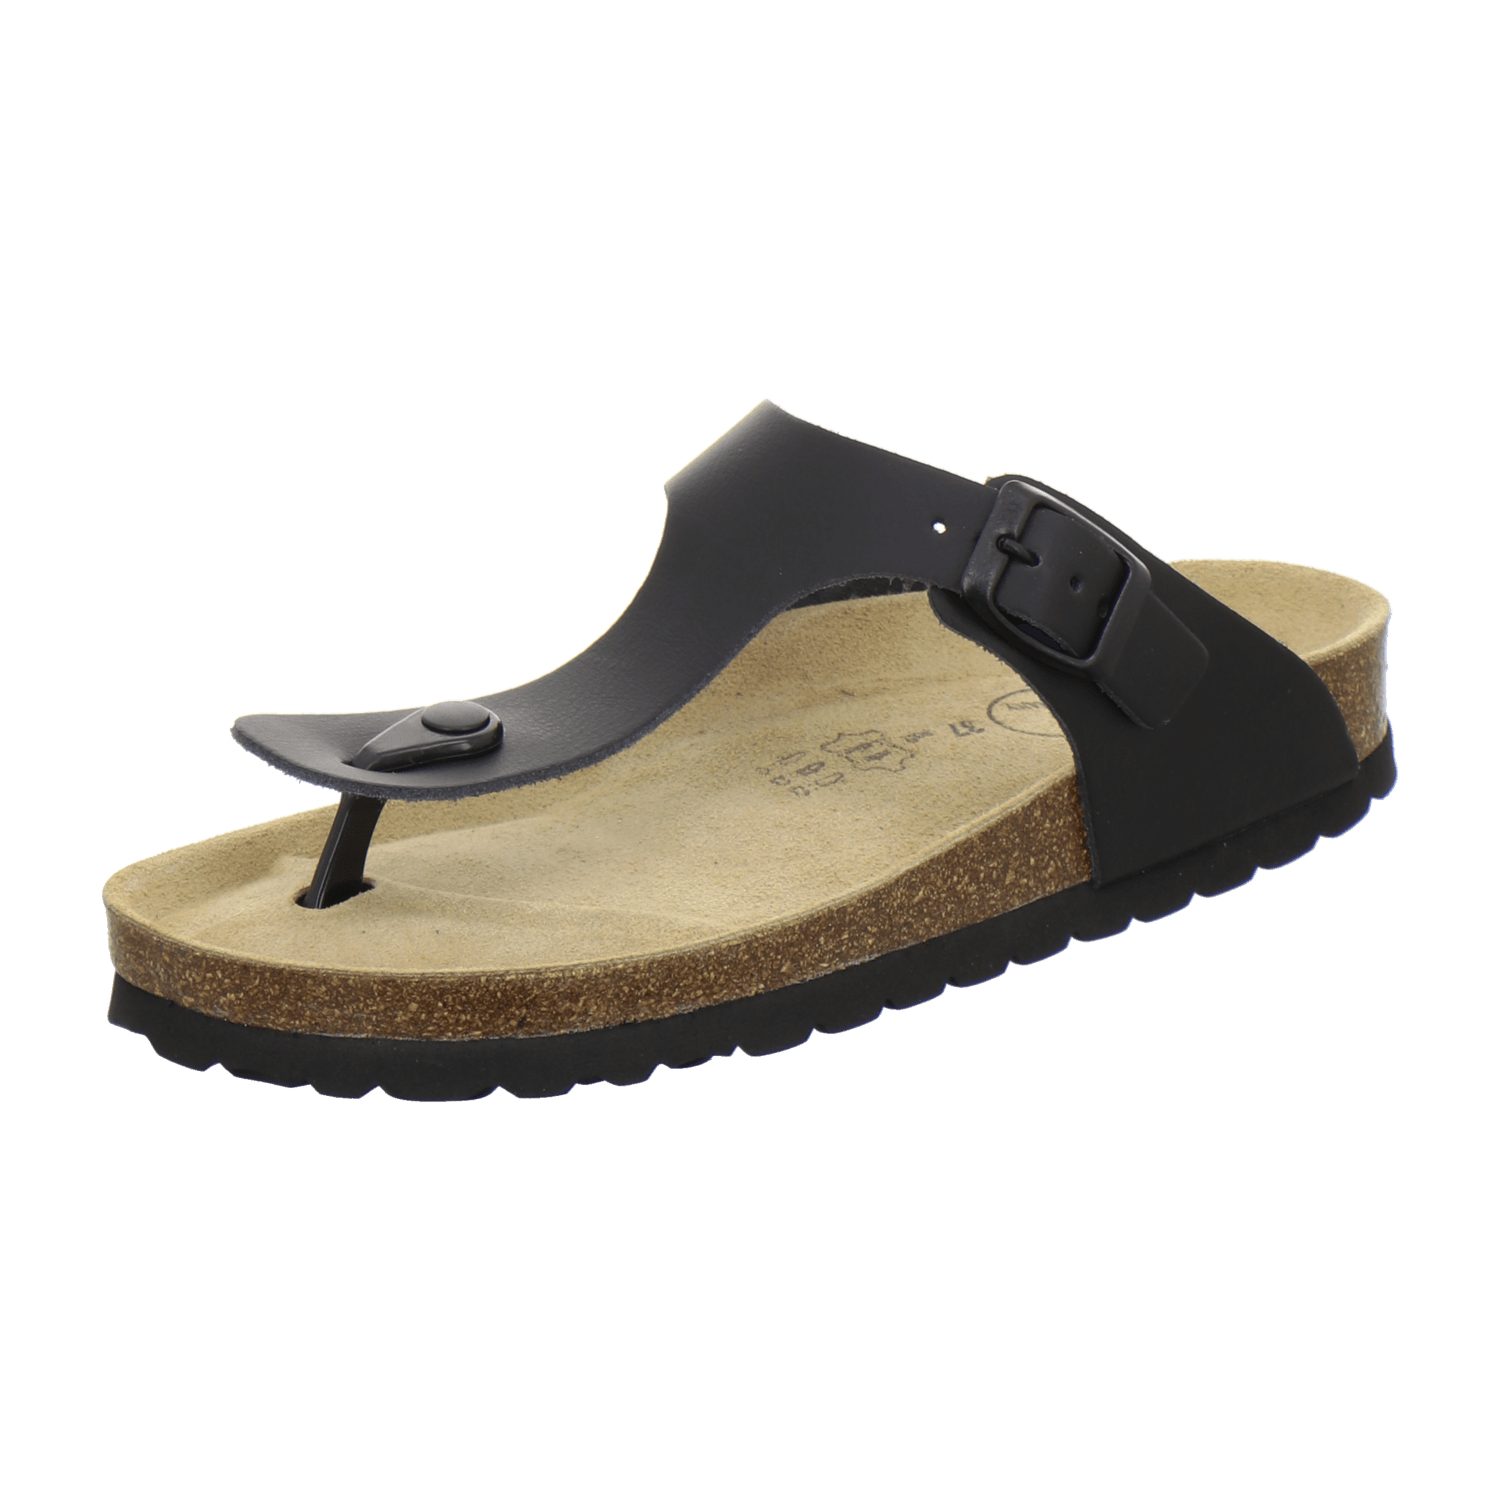 AFS-Schuhe 2107 Zehentrenner für Damen aus Leder mit Fussbett, Made in Germany schwarz Glattleder